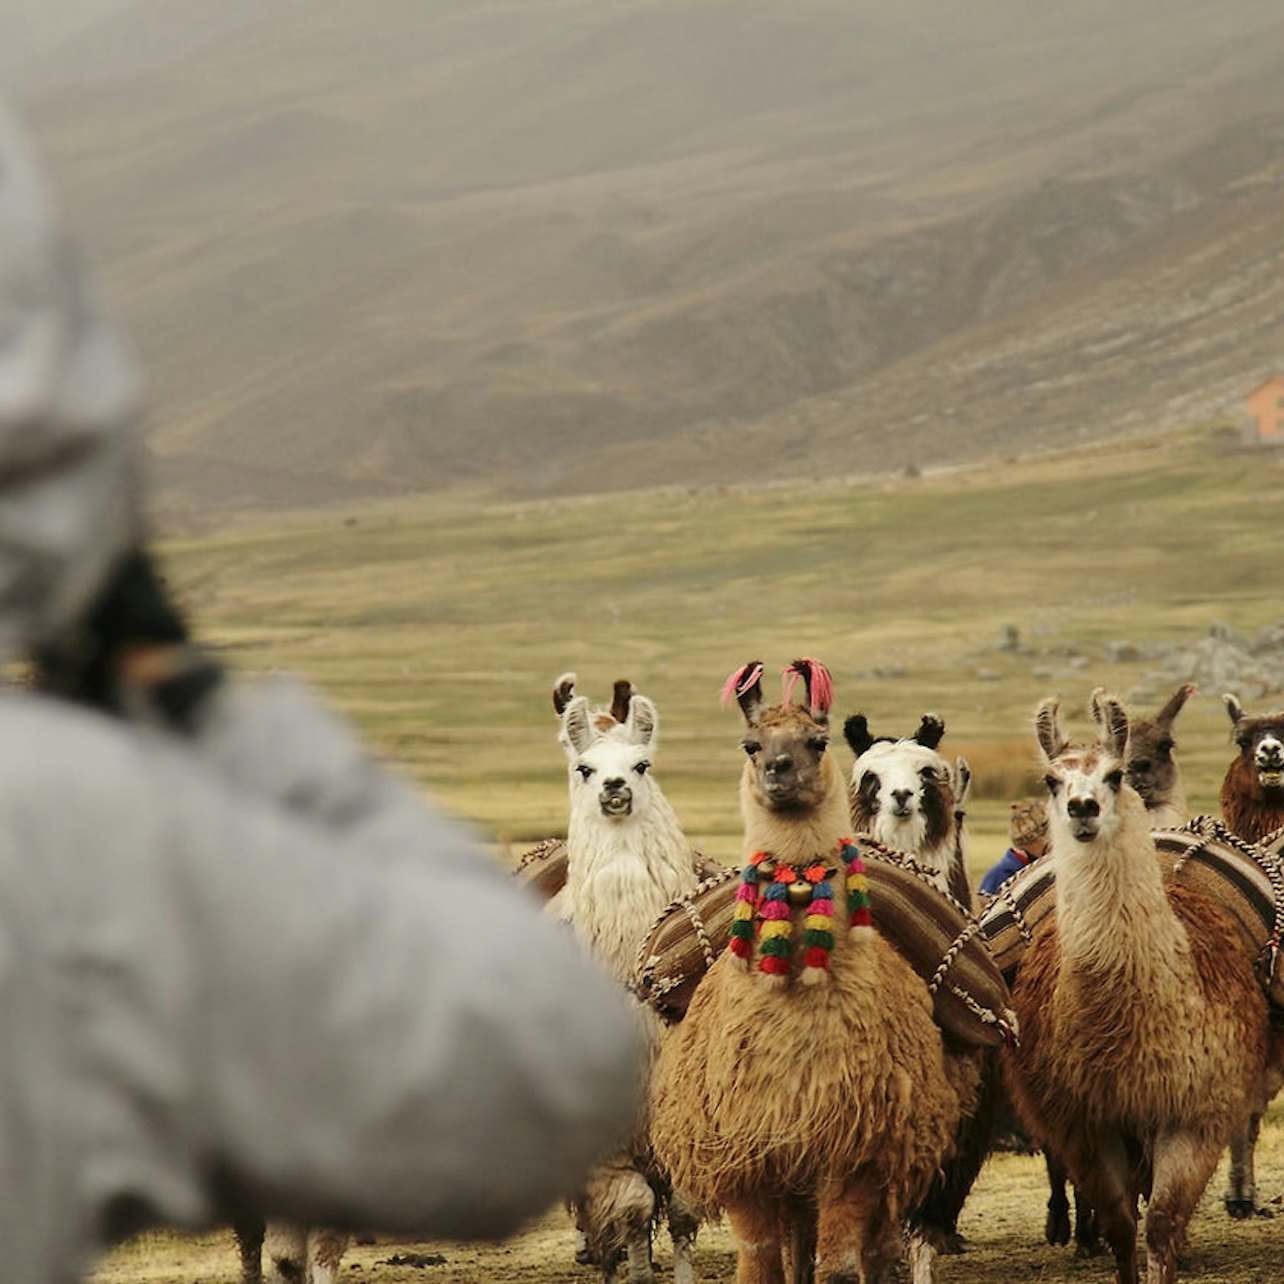 Excursión a la montaña de los siete colores desde Cuzco - Alojamientos en Cuzco